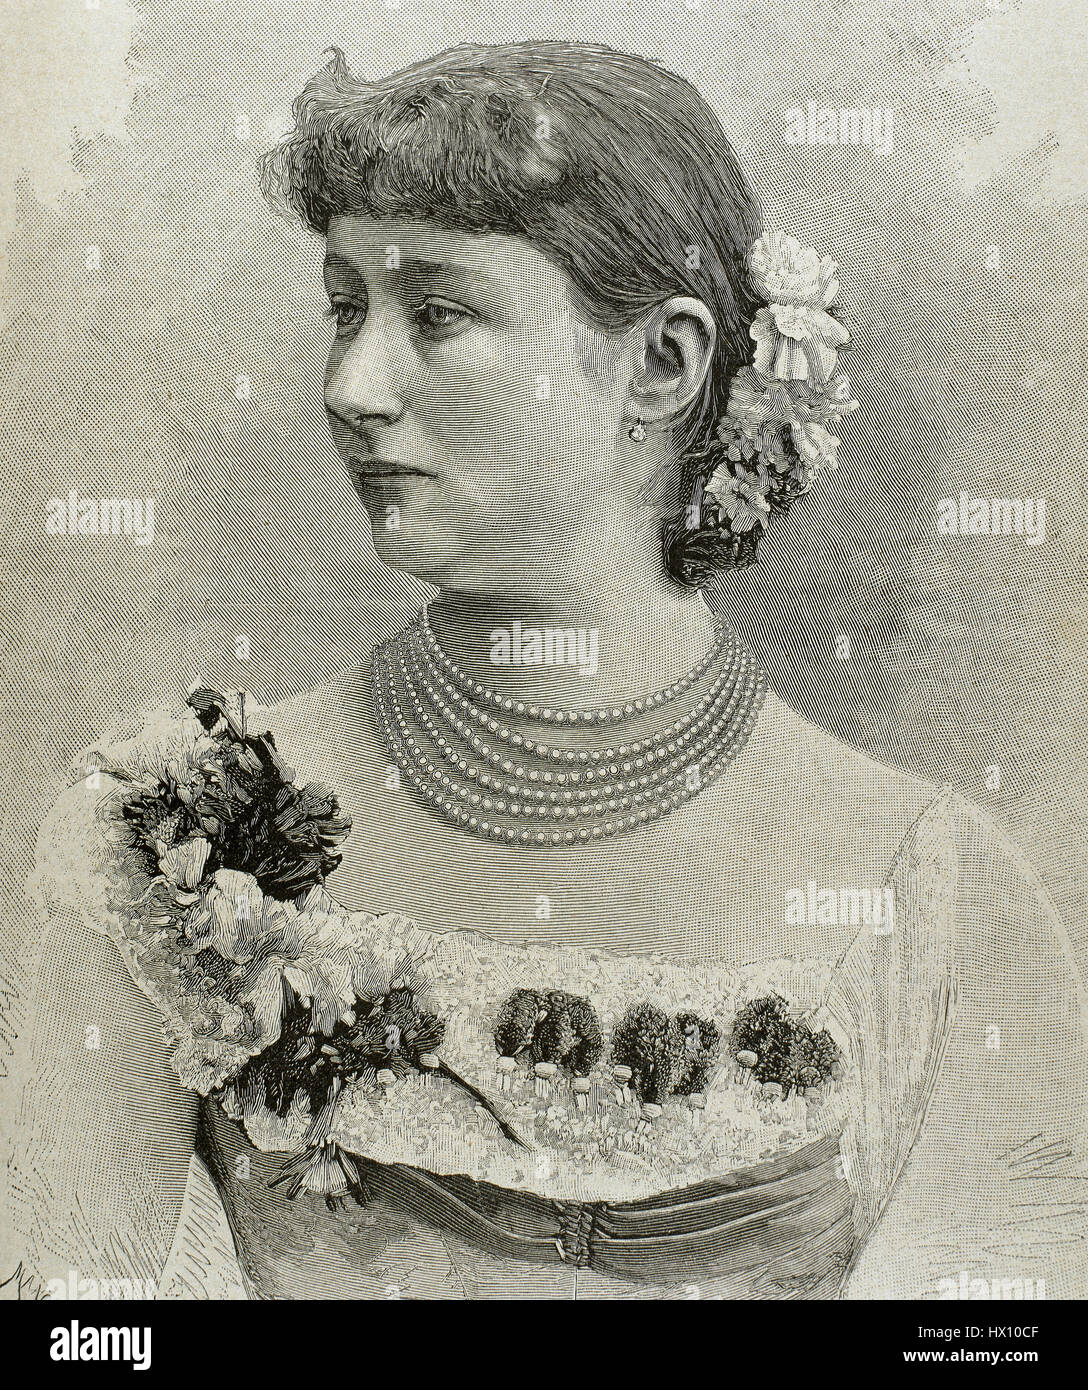 Augusta Victoria di Schleswig-Holstein (1858-1921). L'ultima imperatrice tedesca e regina di Prussia come la prima moglie dell'imperatore tedesco Wilhelm II (1859-1941). Ritratto. Incisione di Mancastropa. Foto Stock